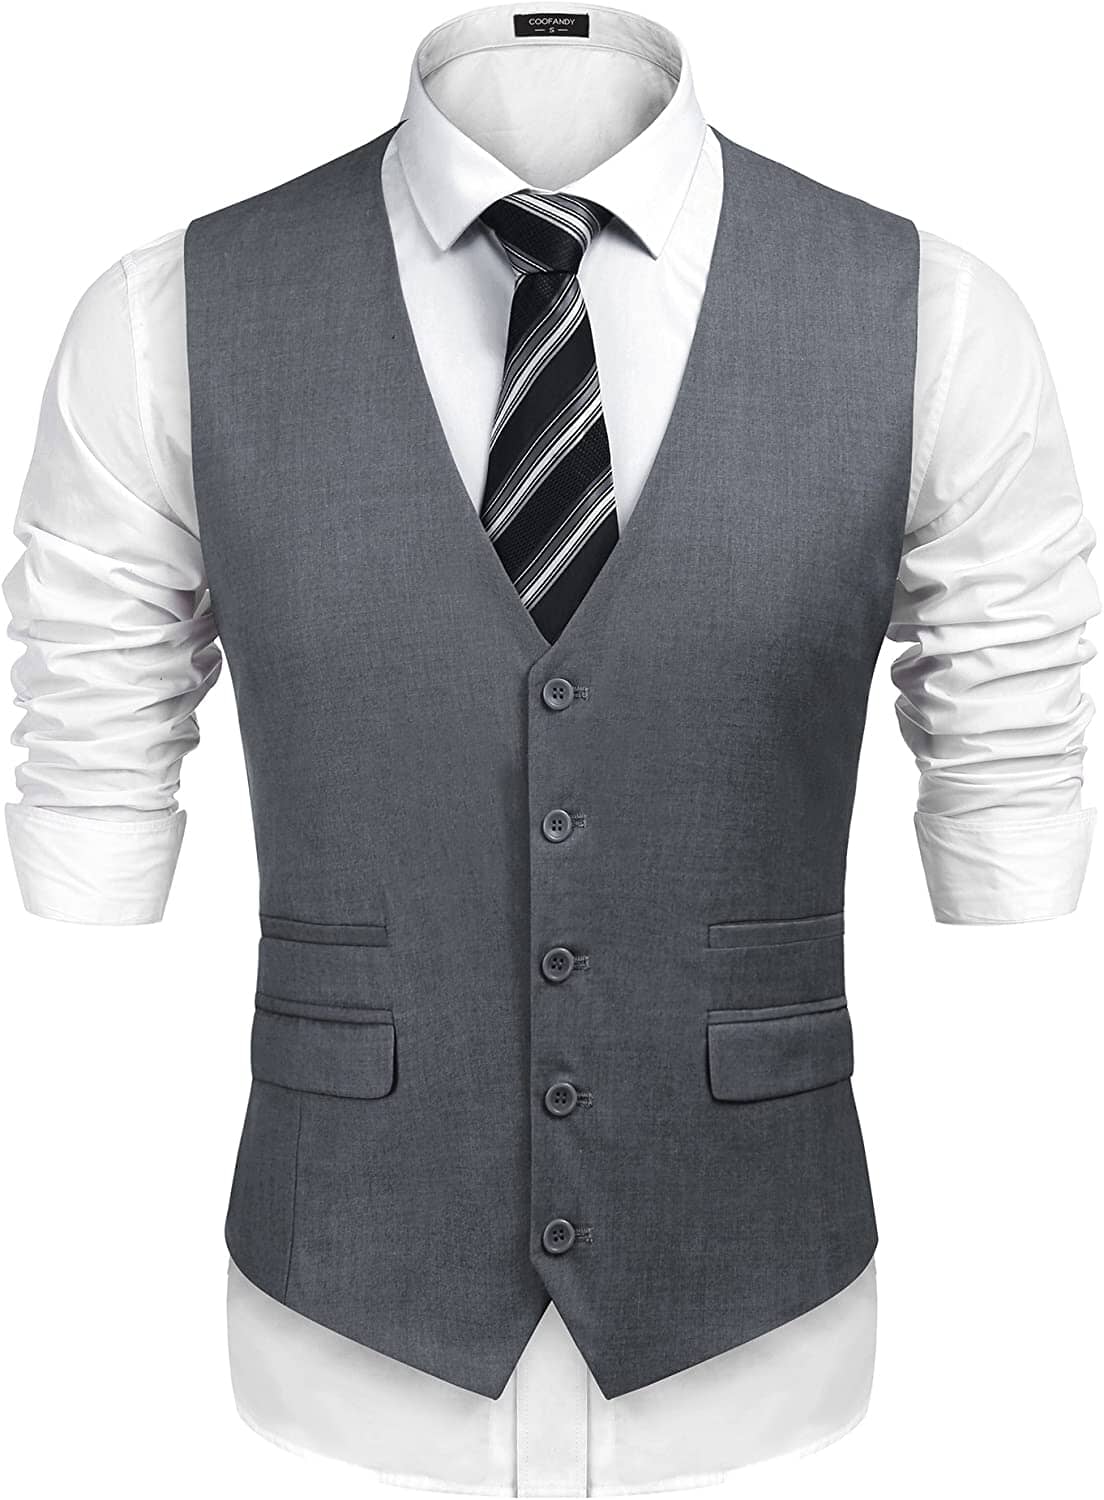 Slim Fit Business Suit Vest (US Only) Vest COOFANDY Store Grey S 